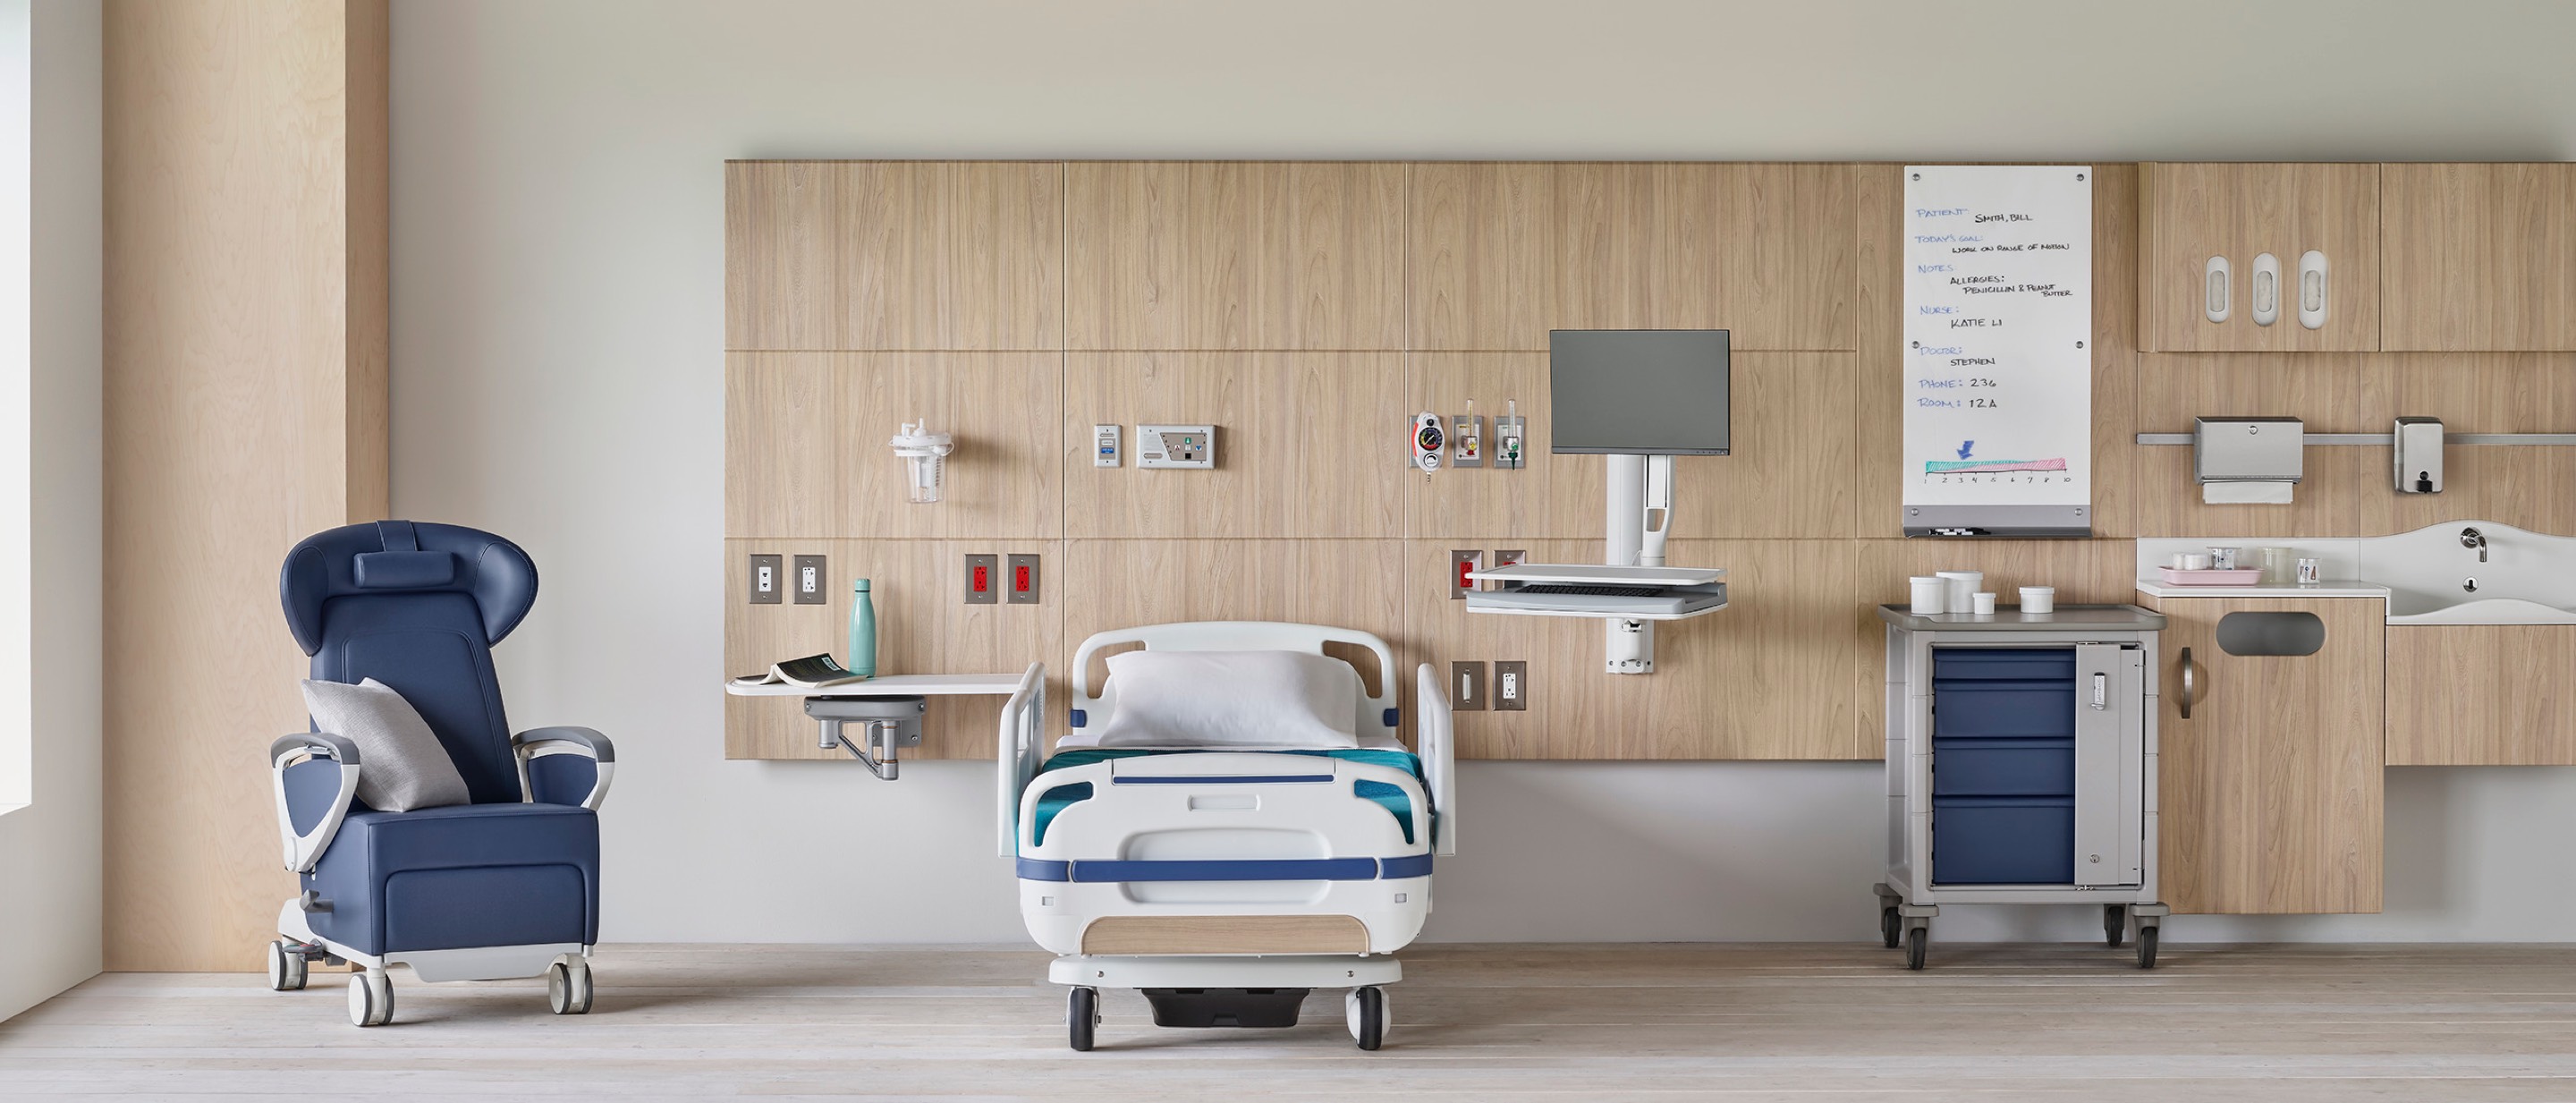 Analítico Soledad rociar Patient Rooms - Healthcare - Herman Miller